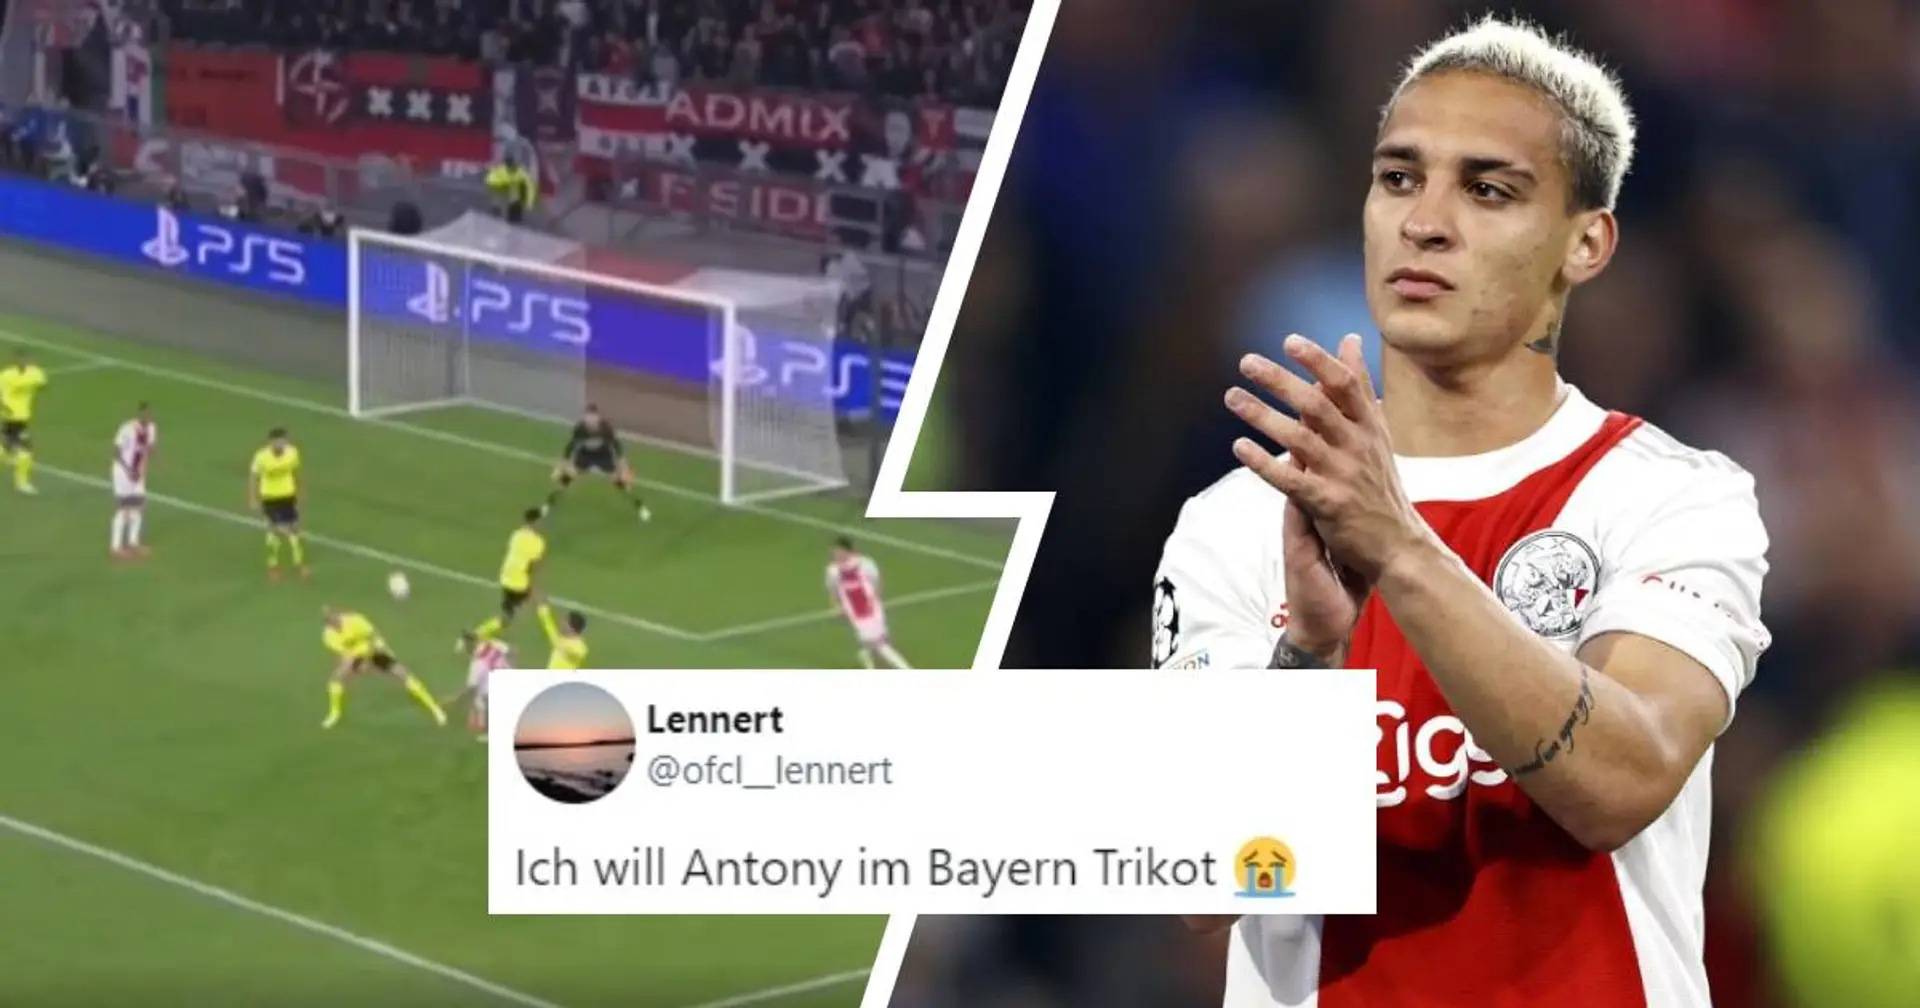 "Er hat bereits Bayern-DNA": Ajax-Juwel Antony trifft gegen Dortmund, Fans wollen ihn in München sehen